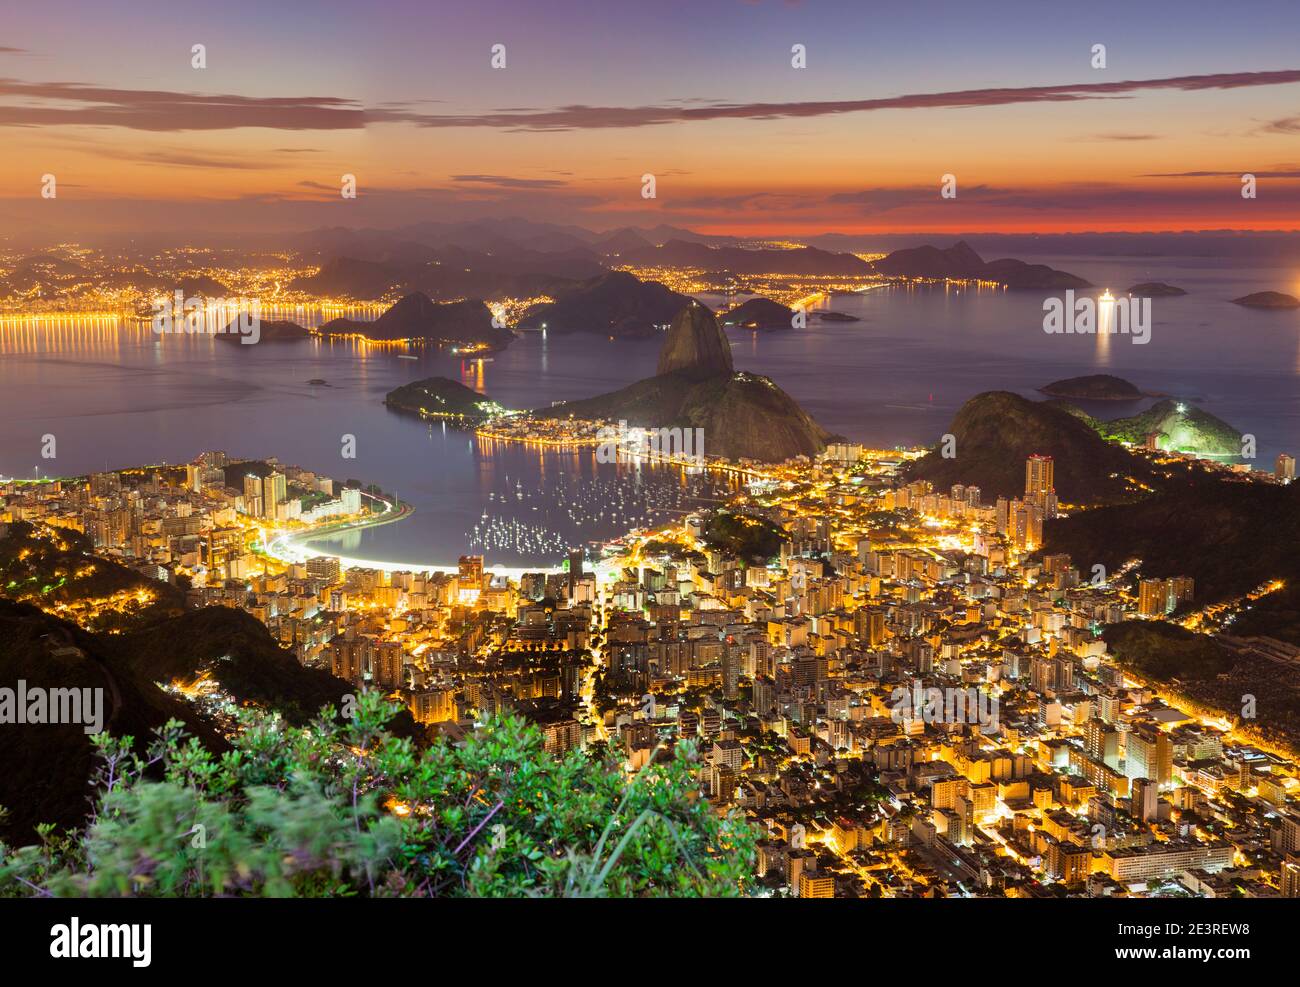 Rio de Janeiro cityscape, Brazil. Sugar Loaf, Botafogo beach and neighborhood seen from Corcovado mountain at sunrise. Stock Photo